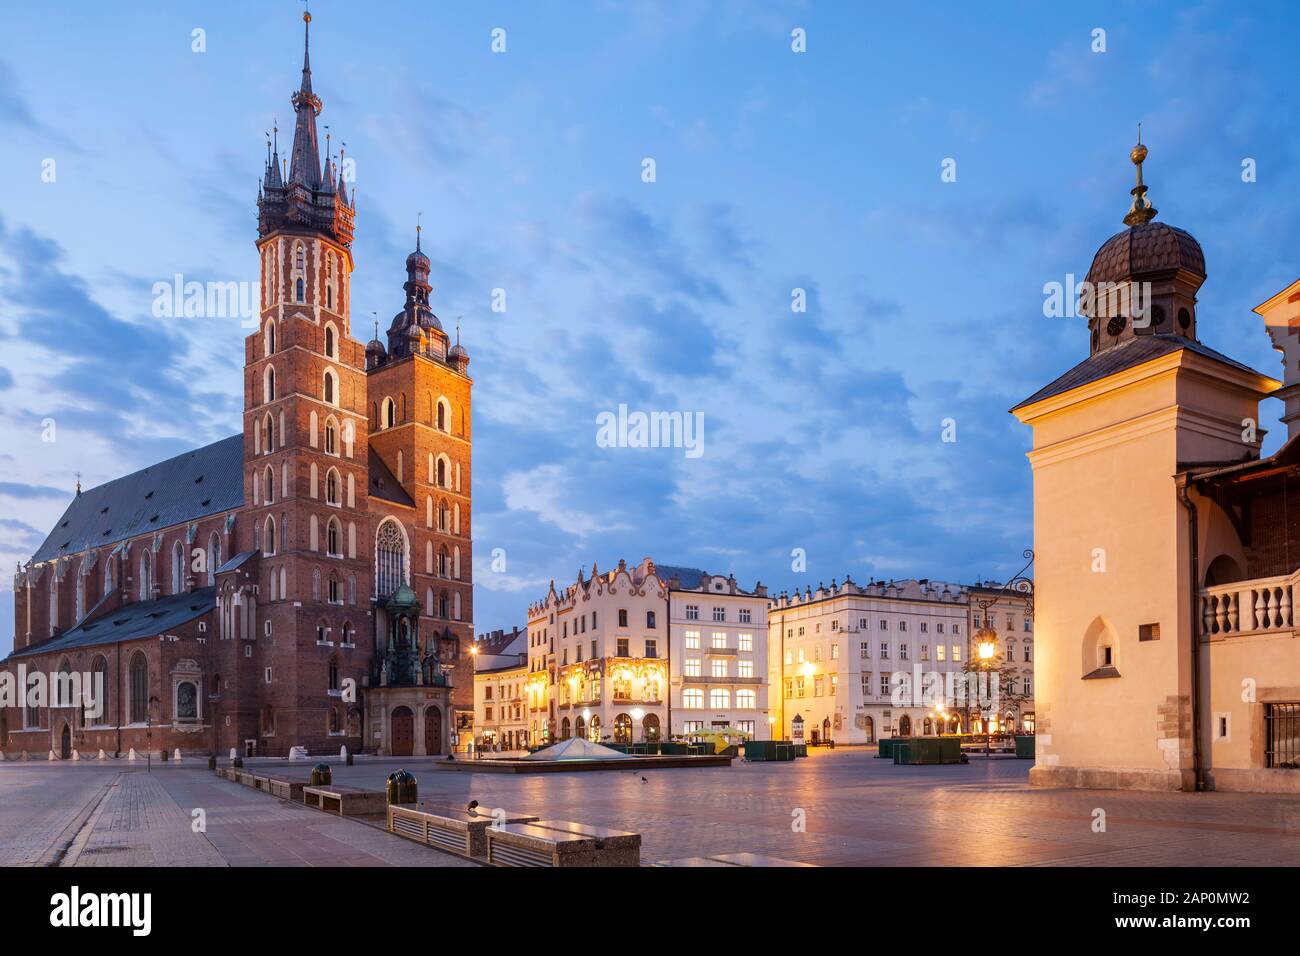 Alba sulla piazza principale del mercato nella citta' vecchia di Cracovia. Foto Stock